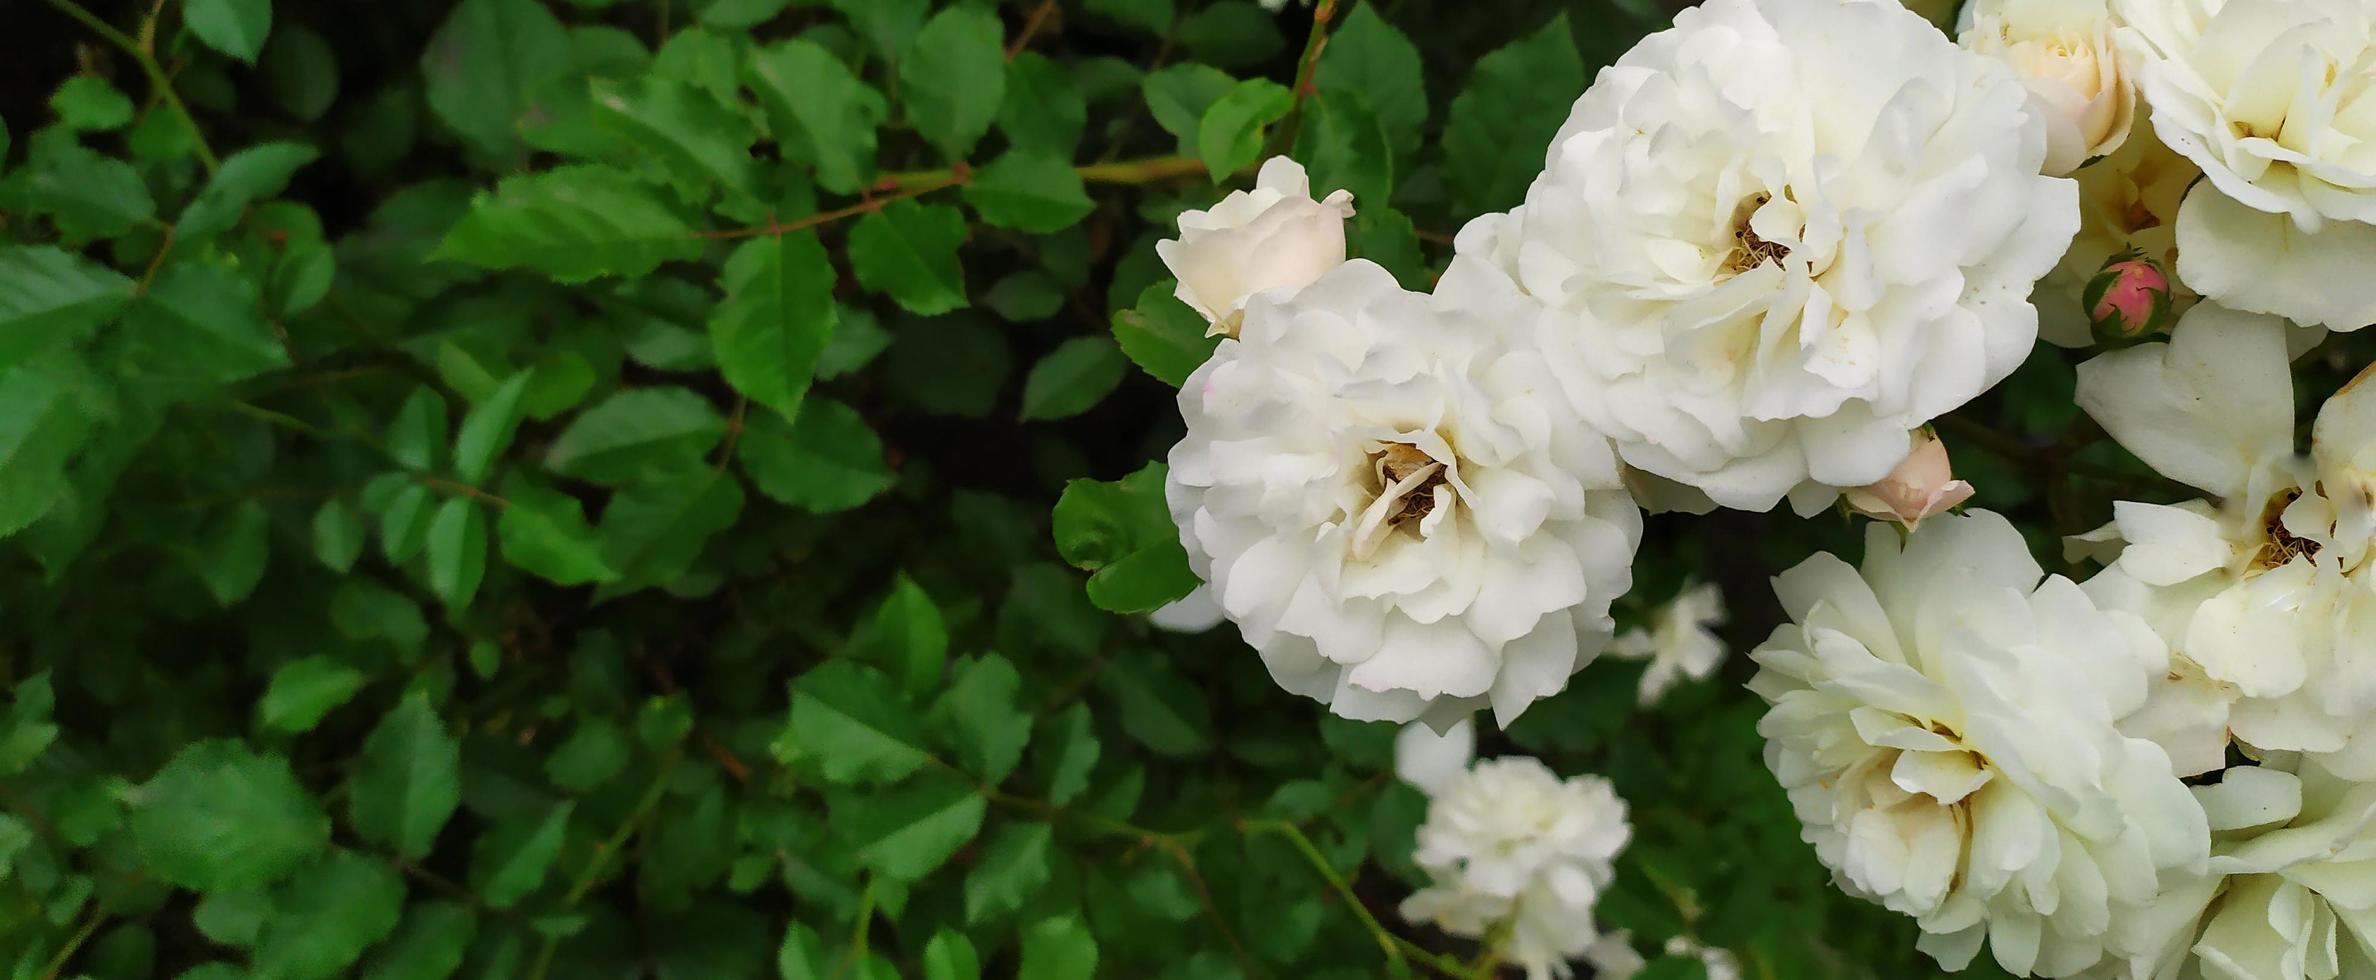 arbusto de rosas. rosas brancas floresciam no jardim no verão. foto